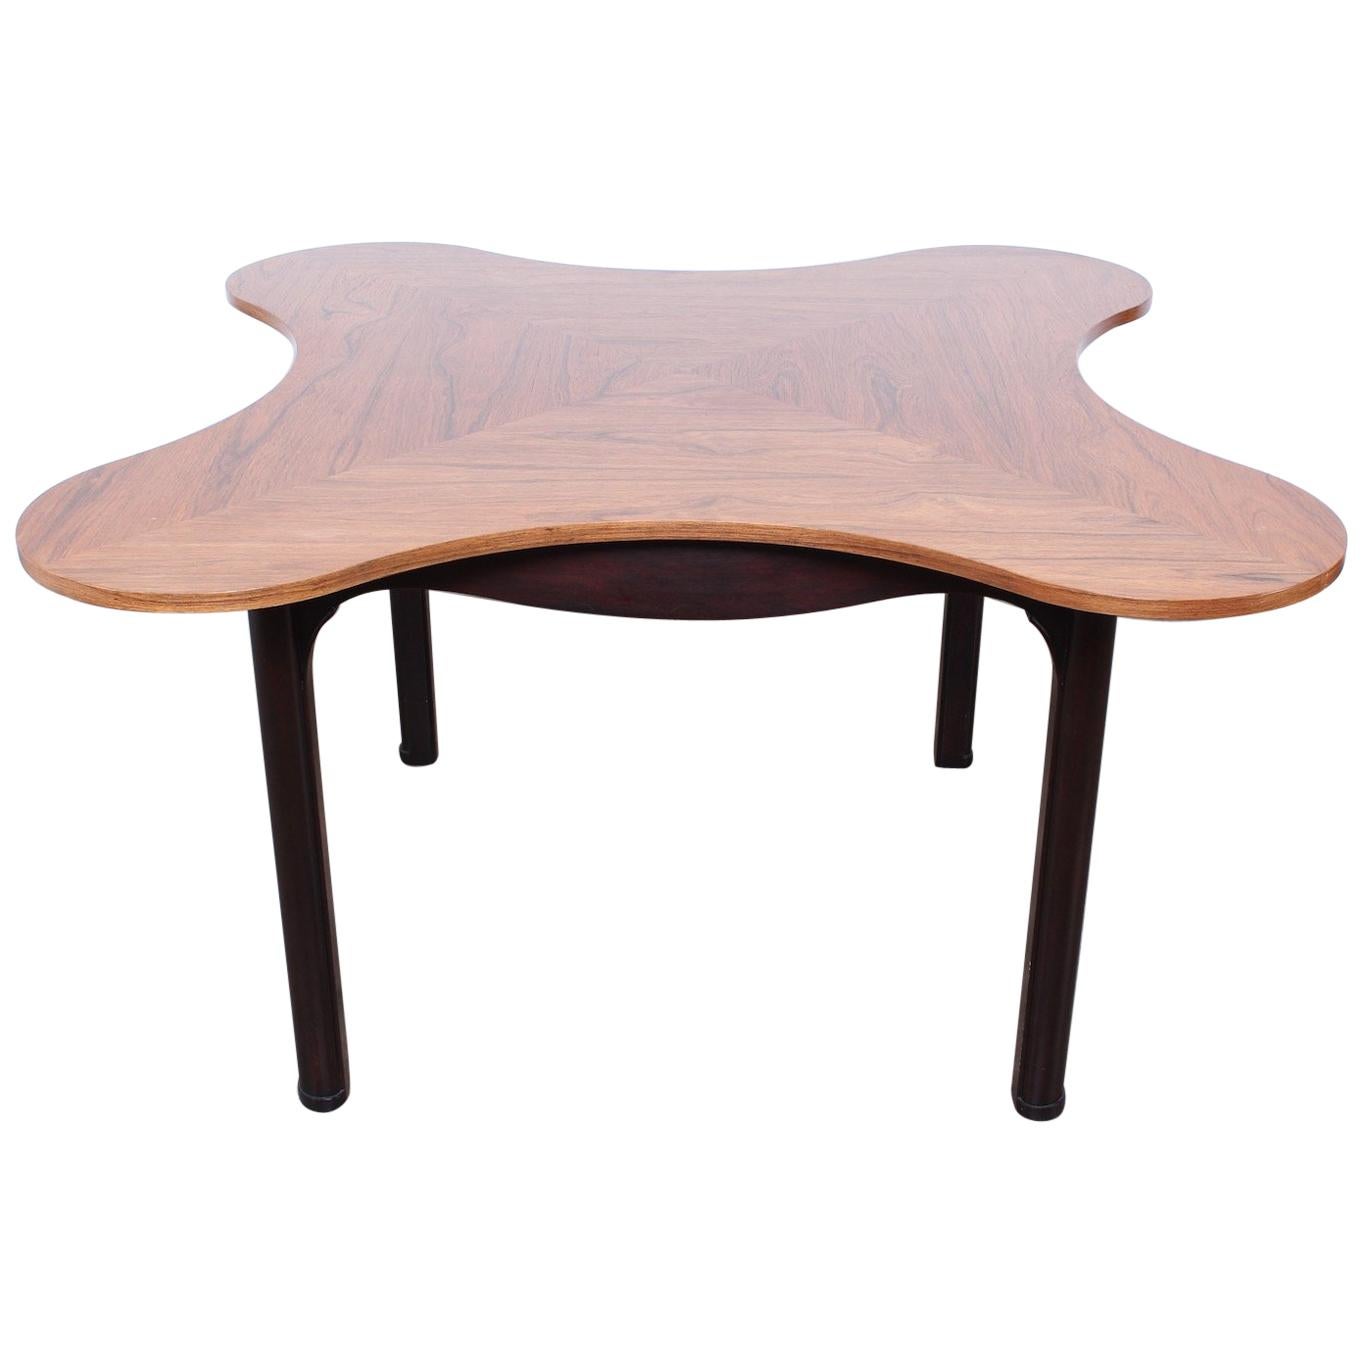 Clover Table by Edward Wormley for Dunbar